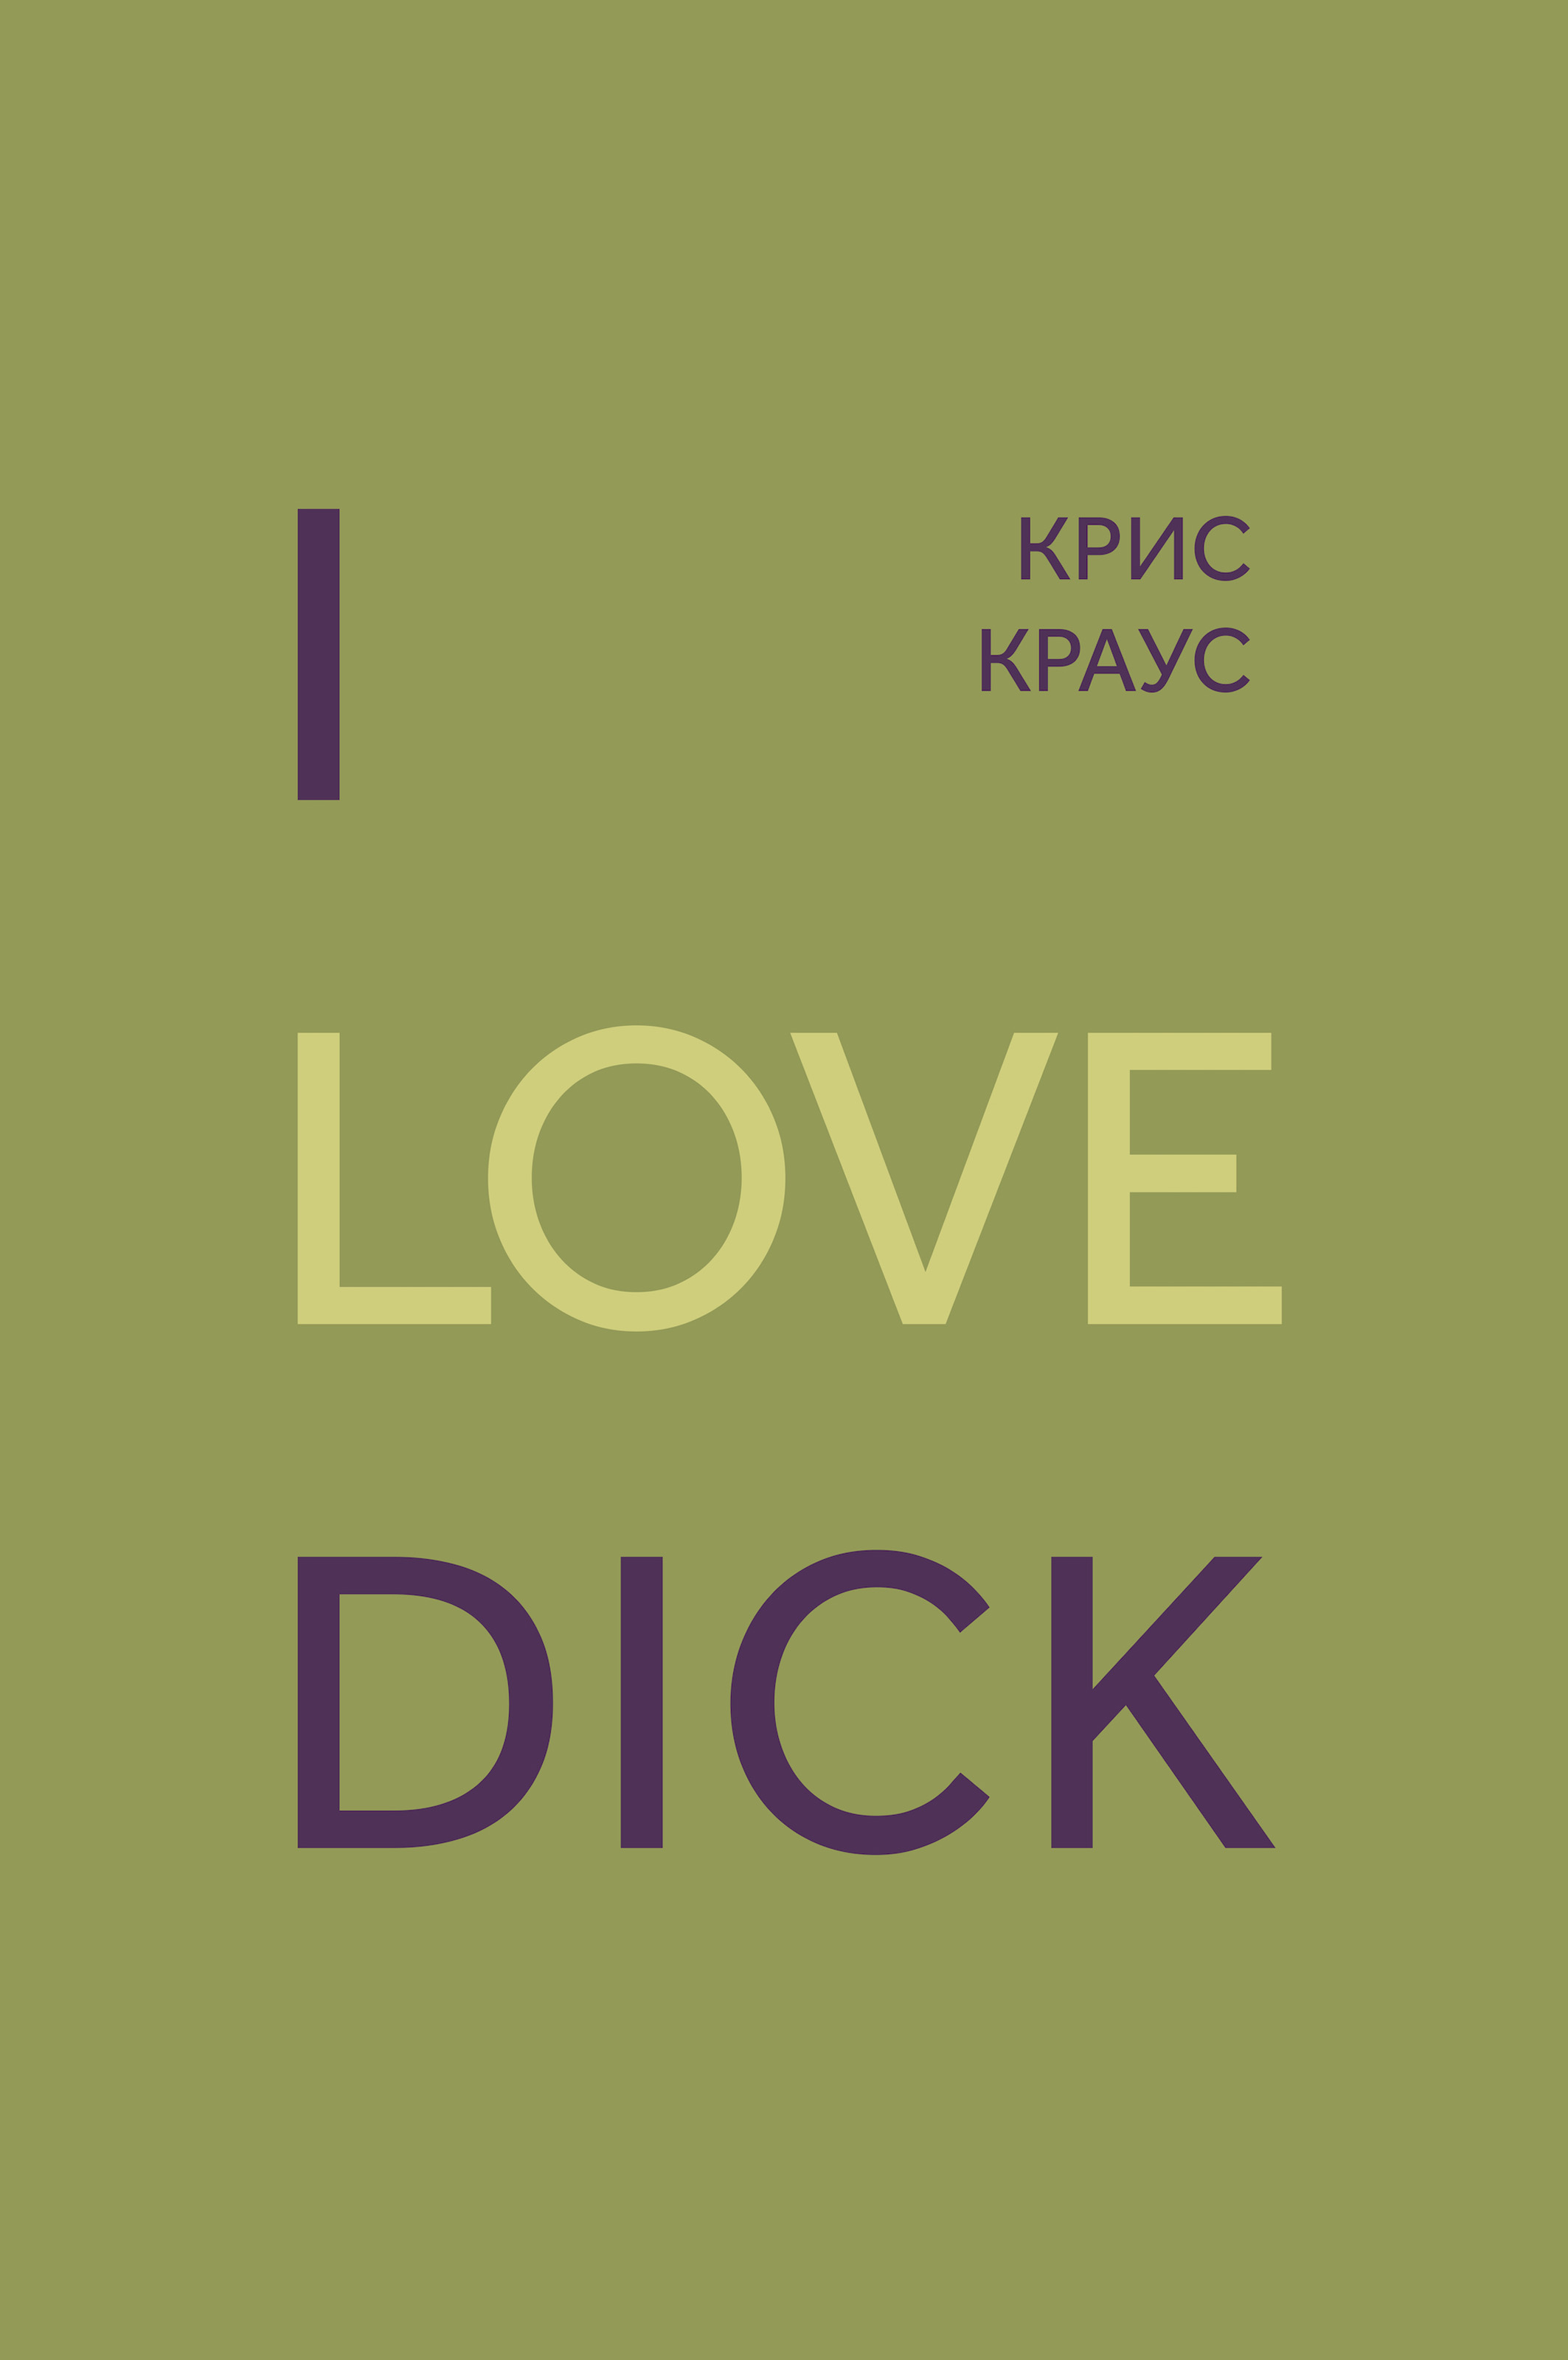 Книга I love Dick из серии , созданная Крис Краус, может относится к жанру Зарубежная классика, Литература 20 века. Стоимость электронной книги I love Dick с идентификатором 51188061 составляет 349.99 руб.